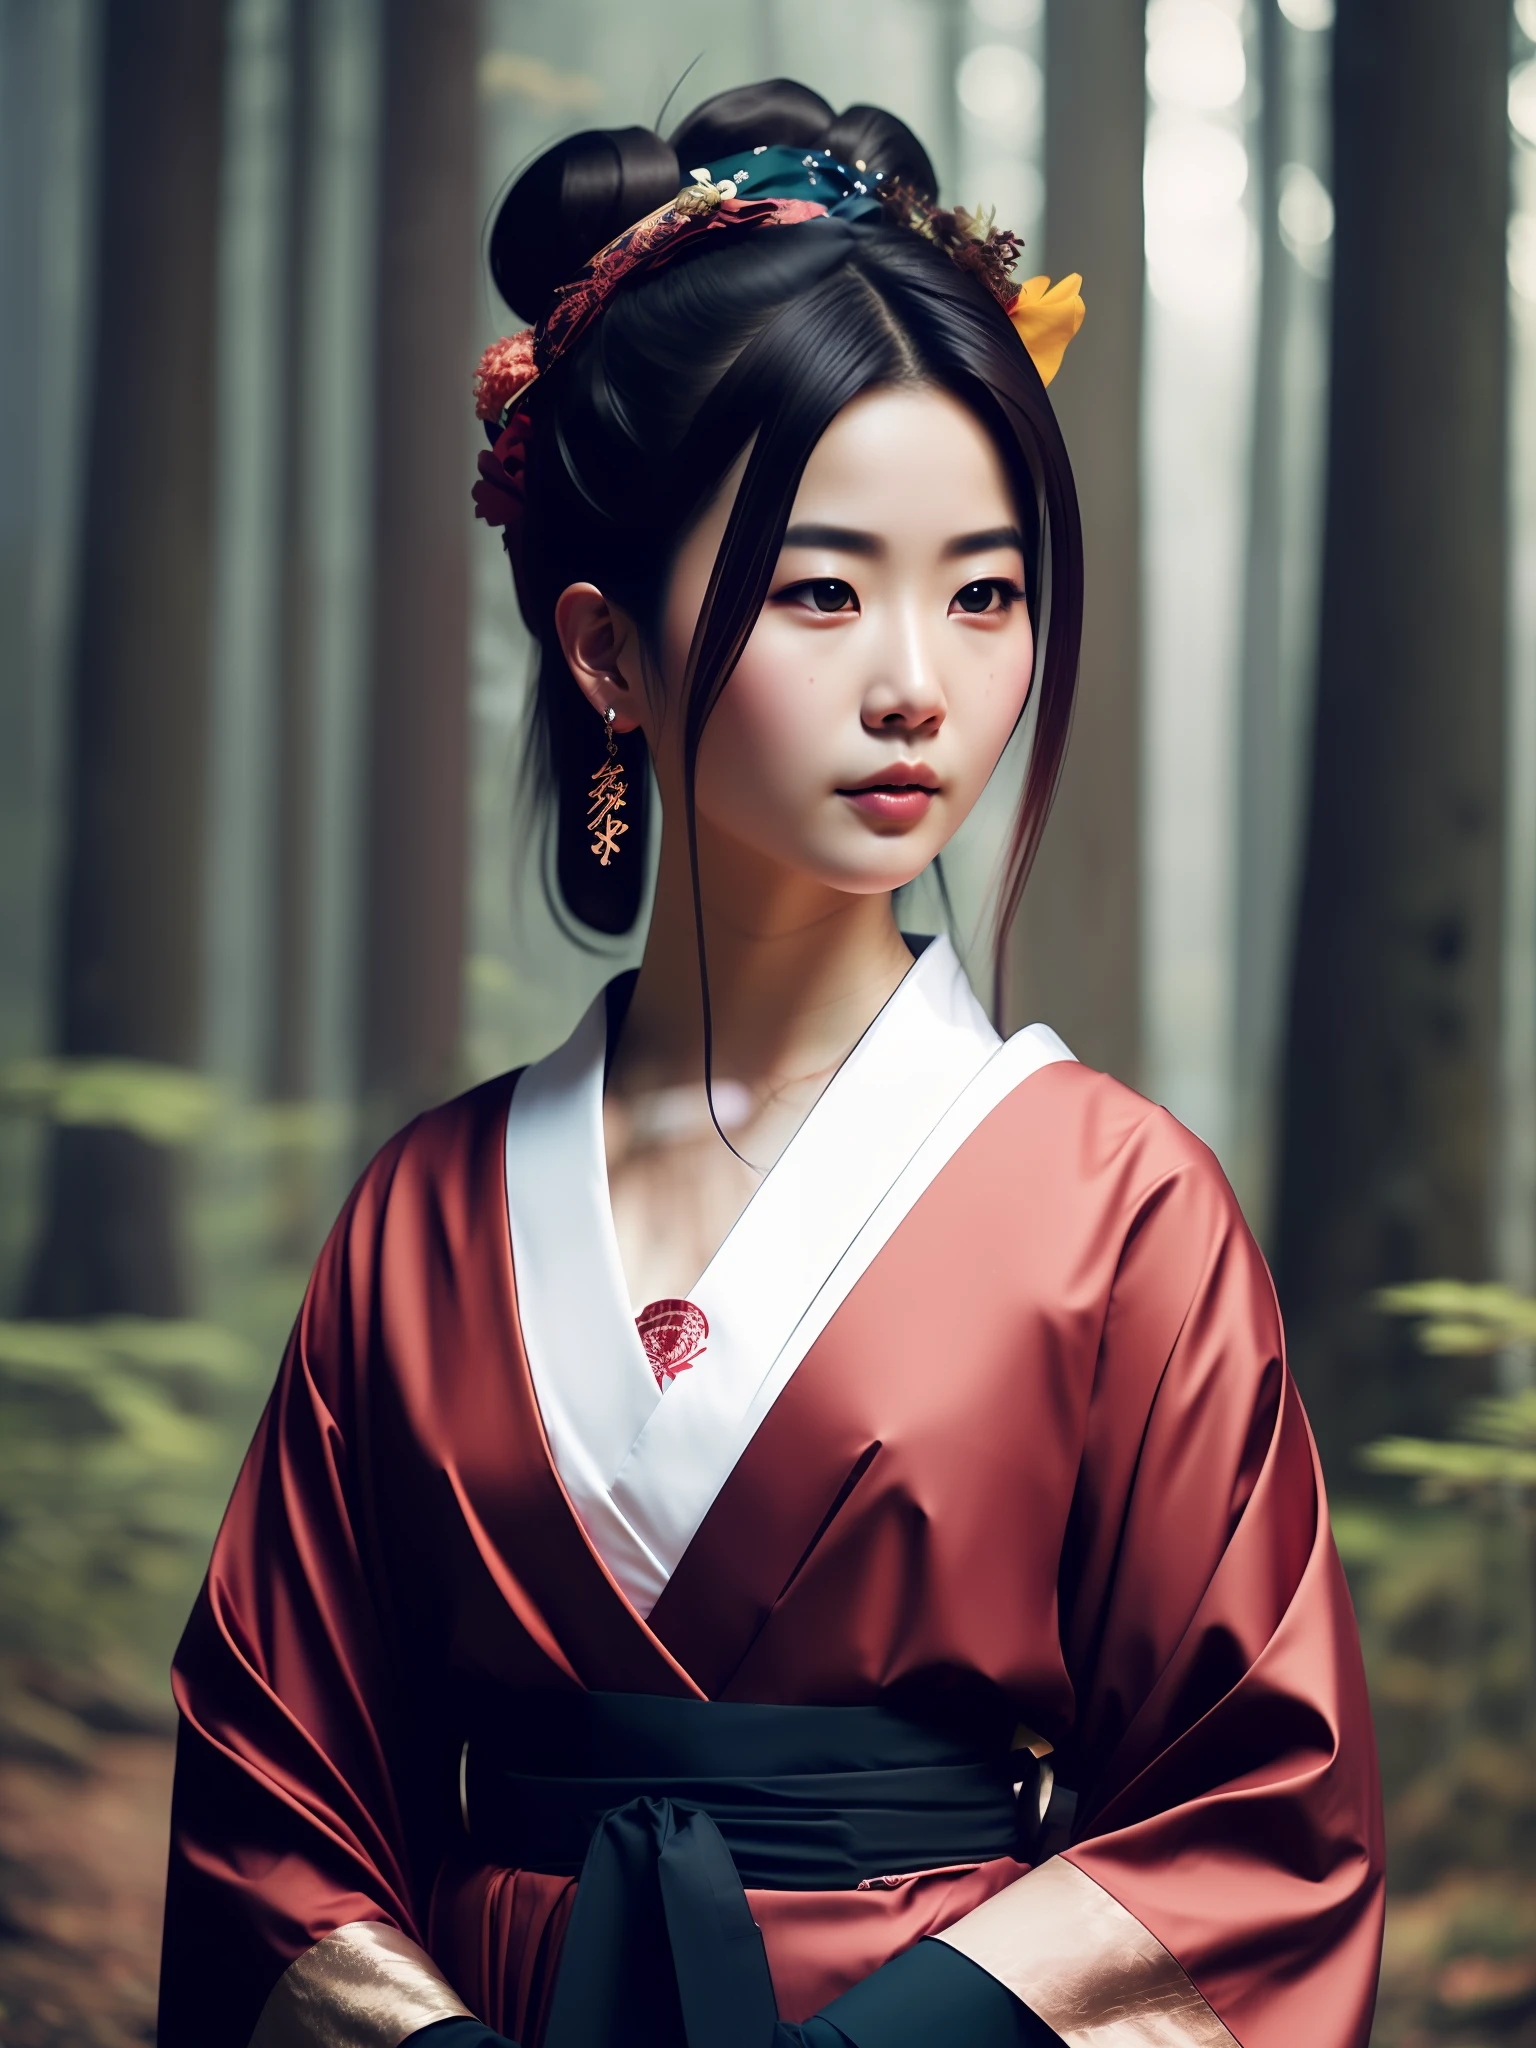 porra_ficção científica_v2, retrato de uma jovem gueixa japonesa muito bonita, na frente de uma floresta enfumaçada, ricas roupas coloridas e guarda-chuva japonês, fechar-se, pose e atitude misteriosa. porra_cinema_v2